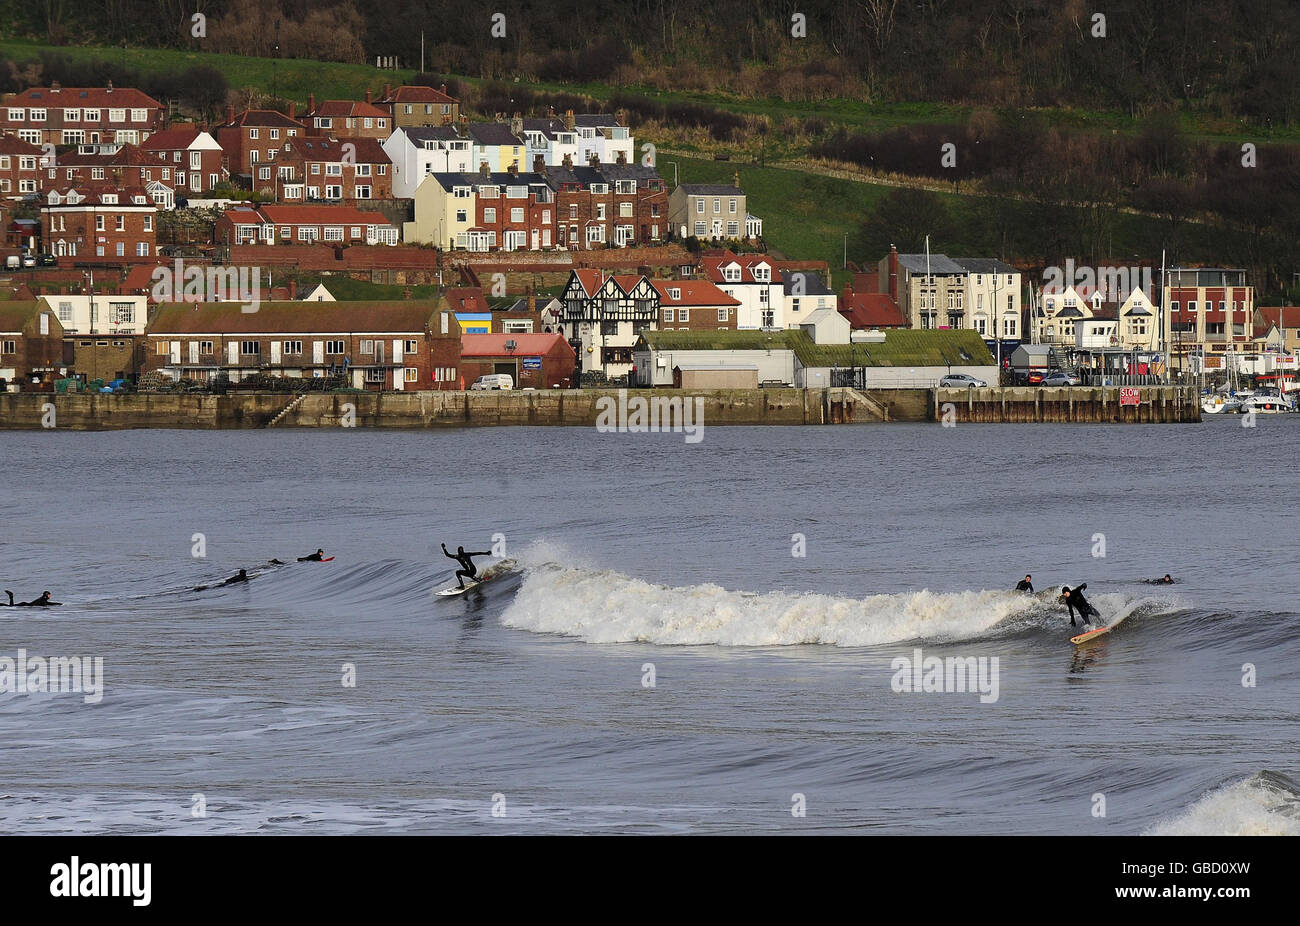 Surft an der Ostküste, während Surfer die perfekten Bedingungen in Scarborough genießen, um auf den Wellen zu reiten. Stockfoto